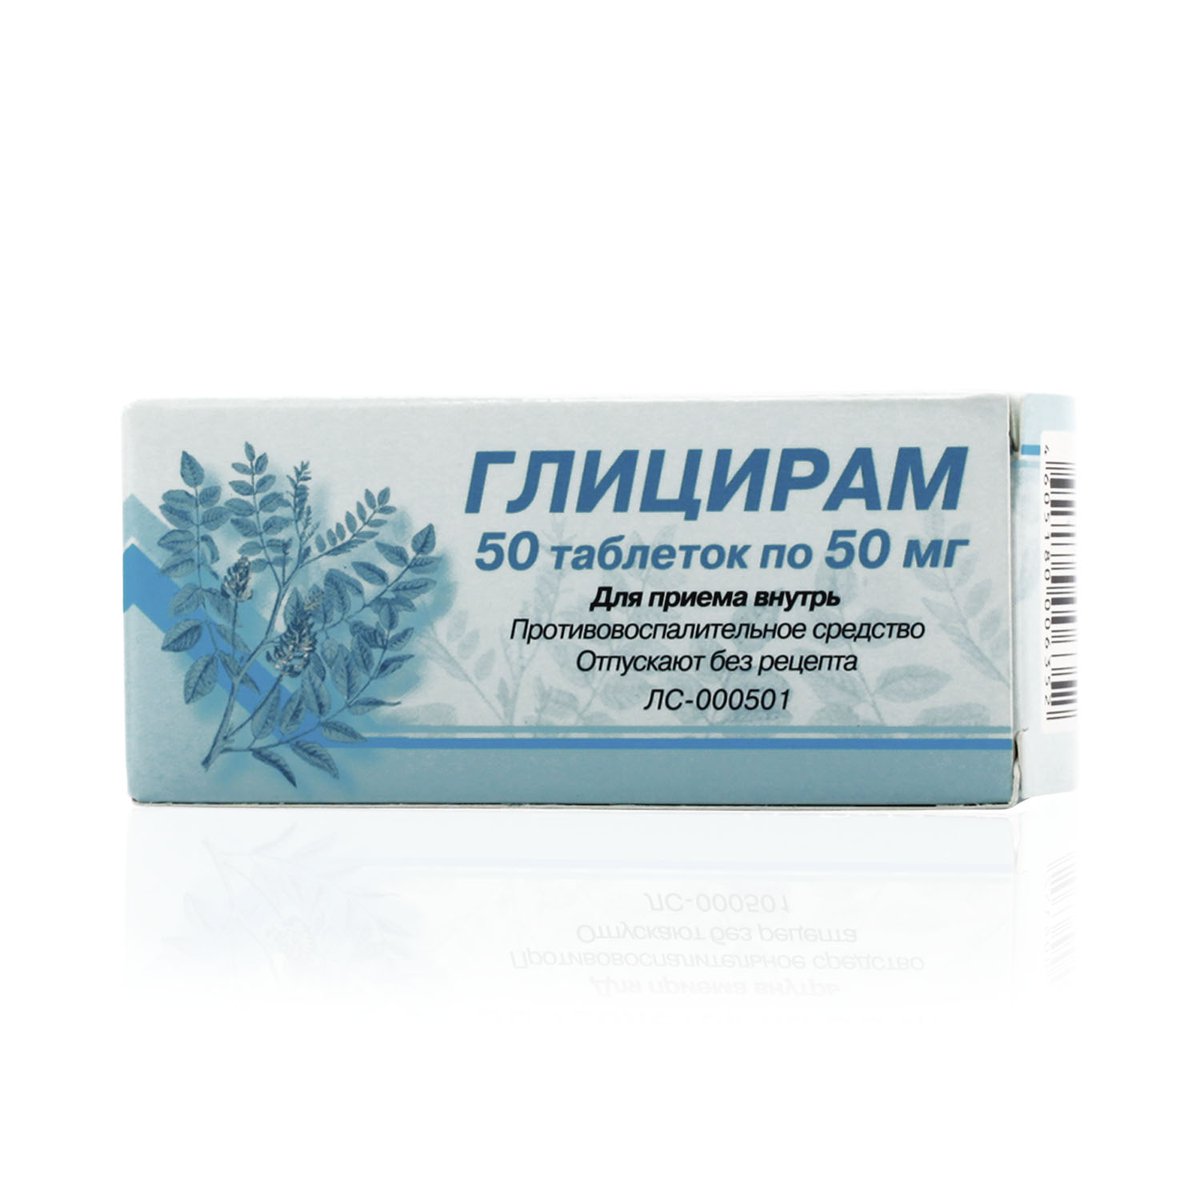 Глицирам (таблетки, 50 шт, 50 мг) - цена,  онлайн  .